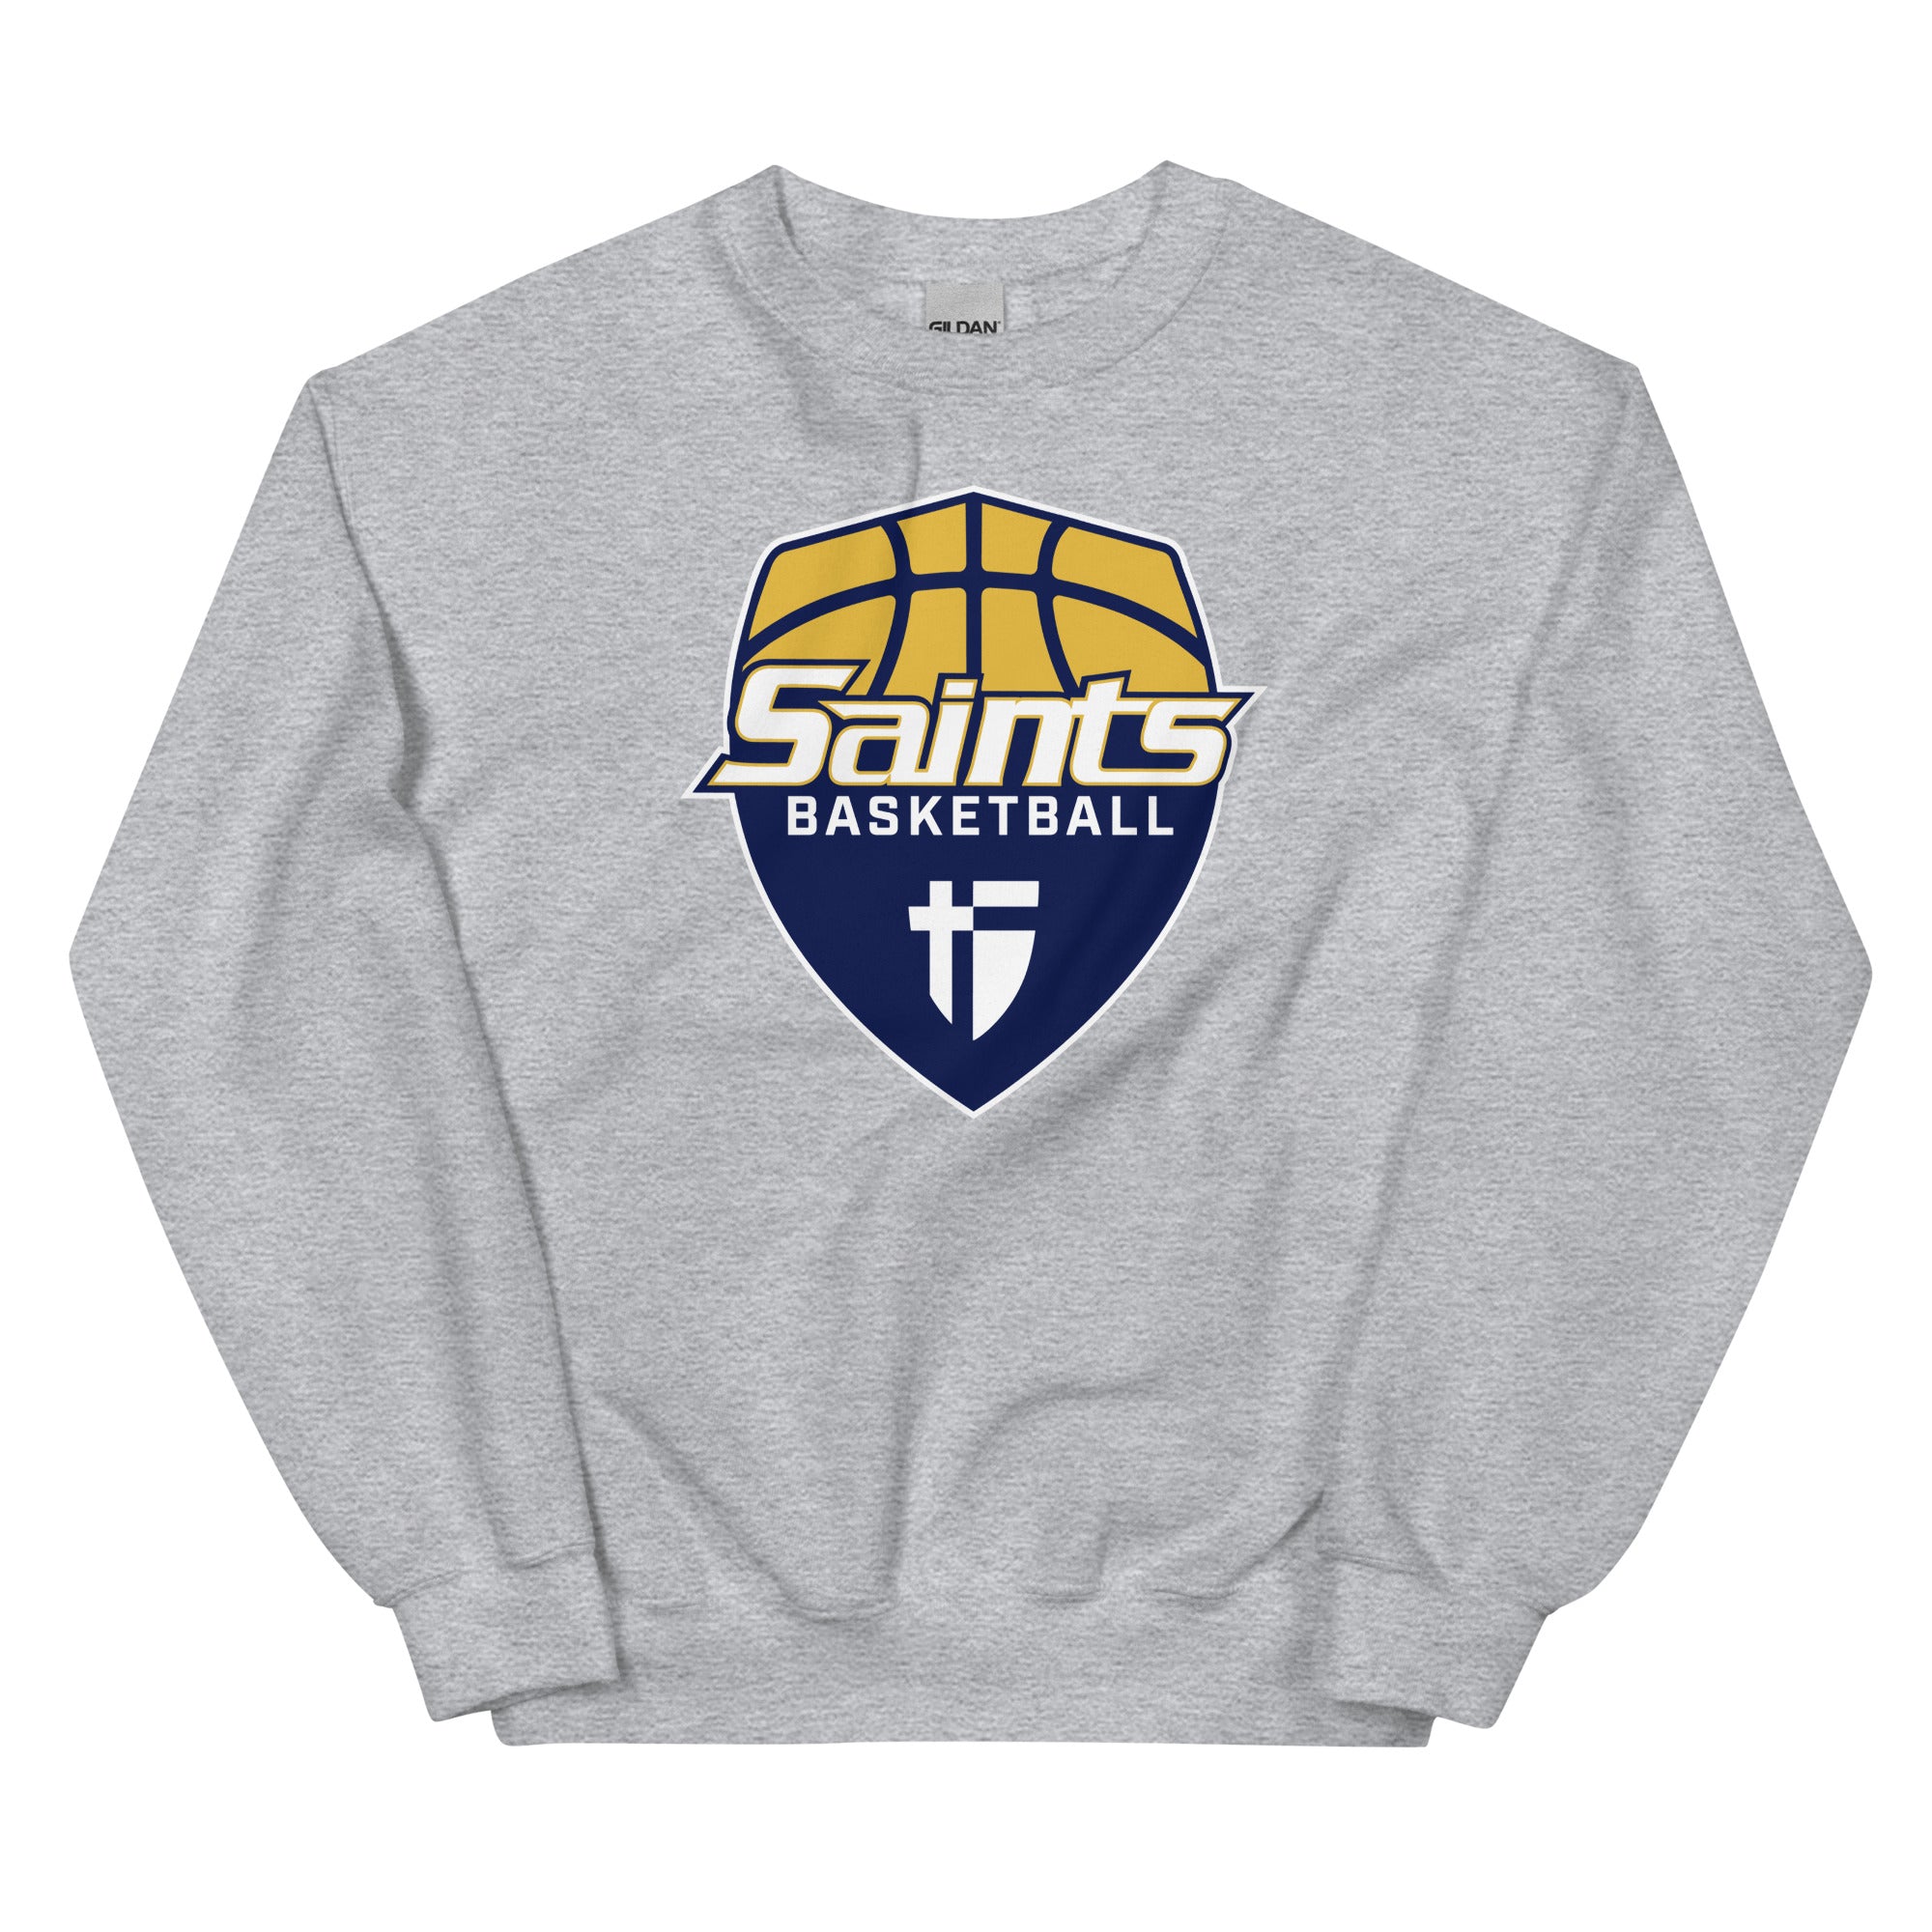 Saints Basketball Grey Unisex Sweatshirt